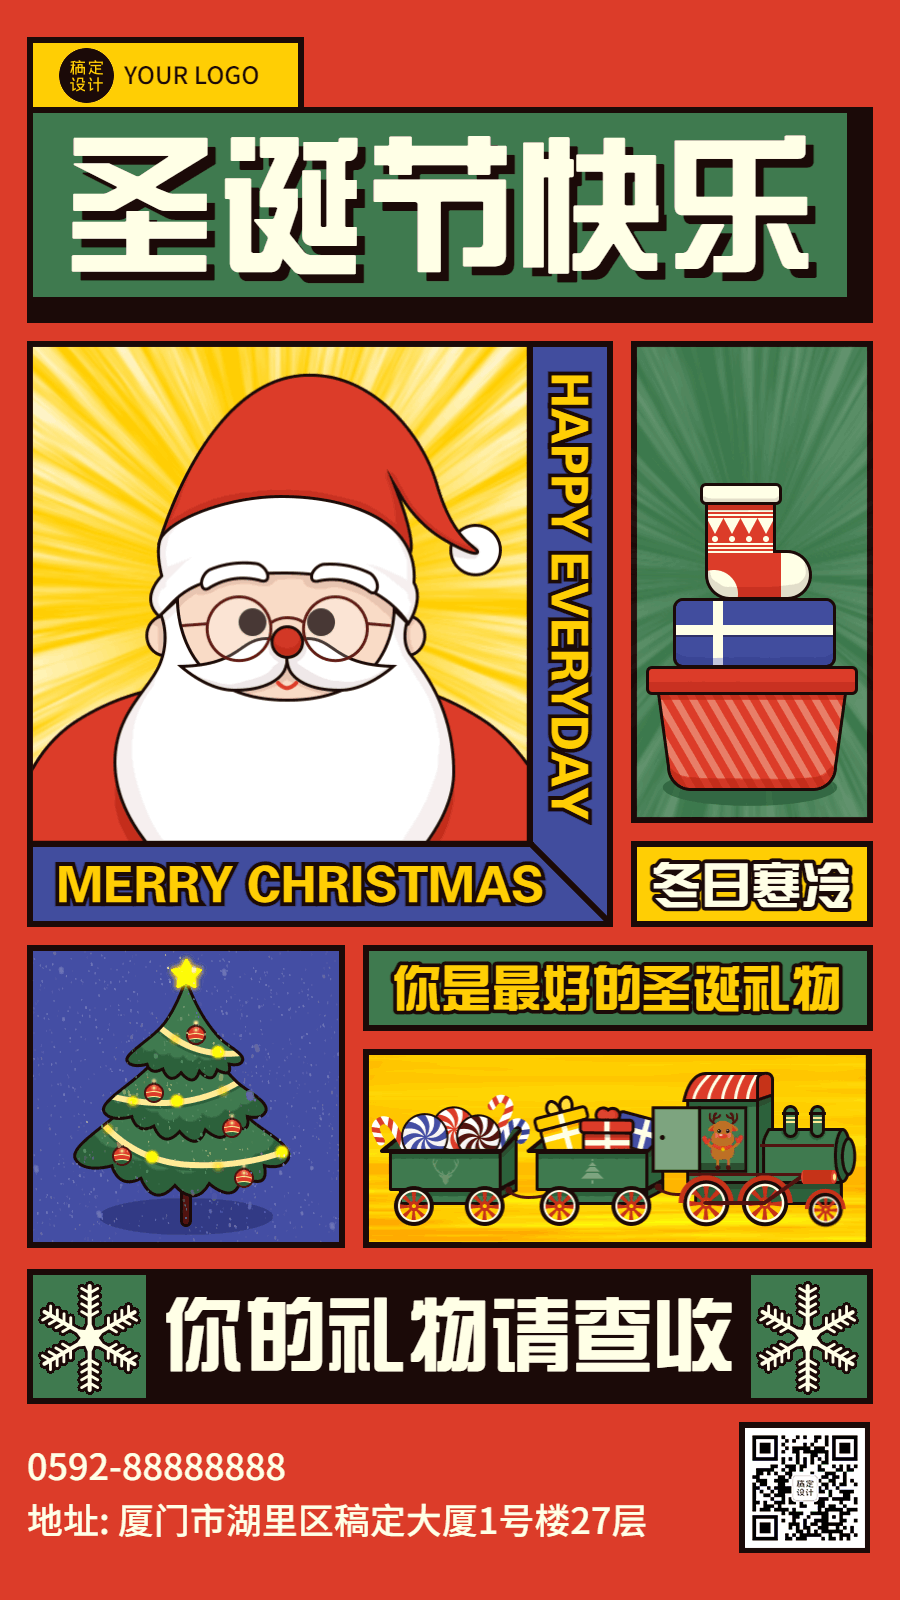 圣诞节创意祝福插画GIF动态海报